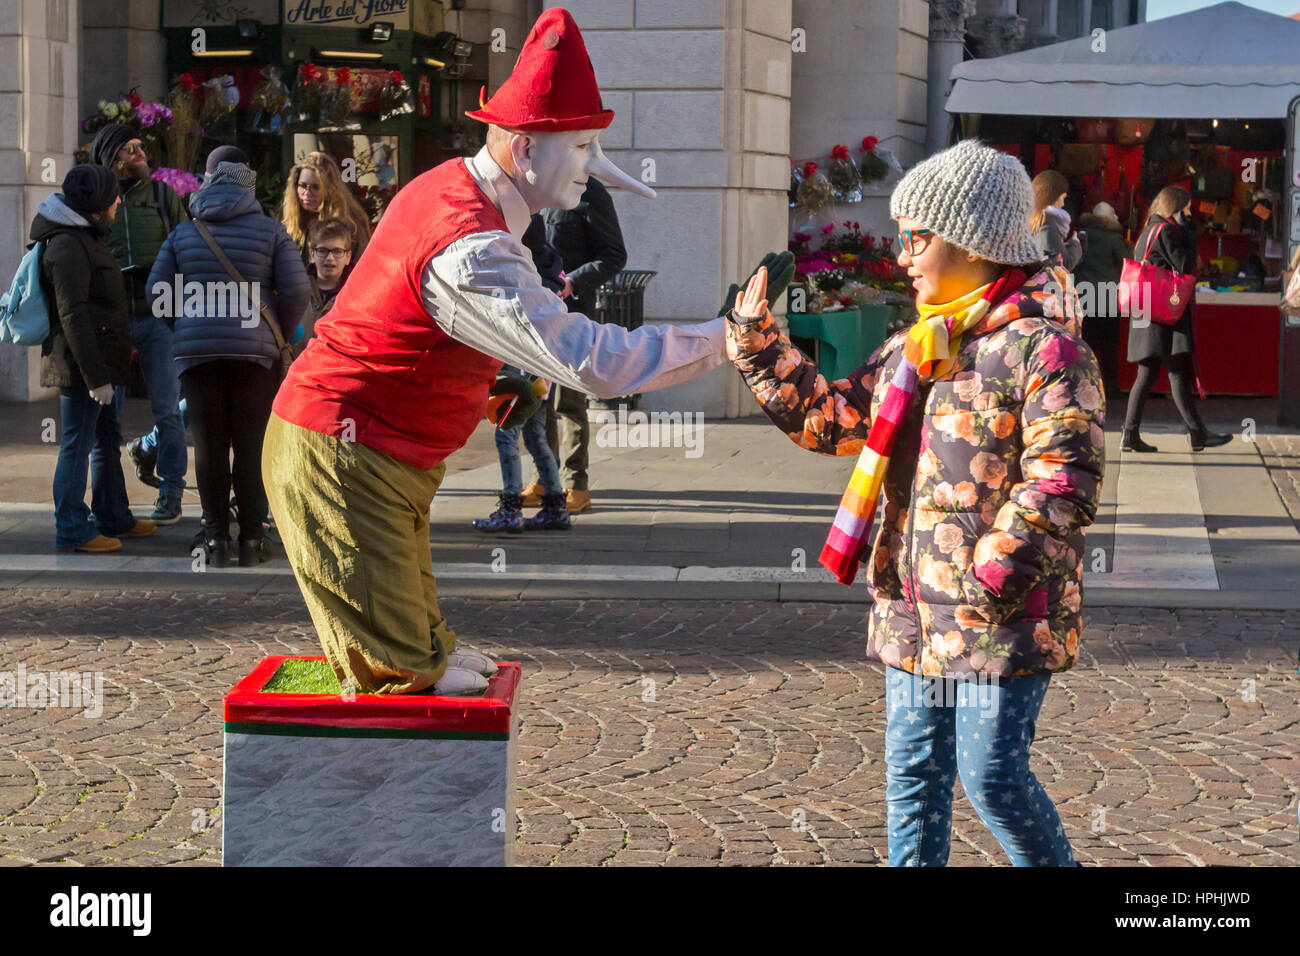 Eine Straße Clown unterhält eine junge Dame. Stockfoto